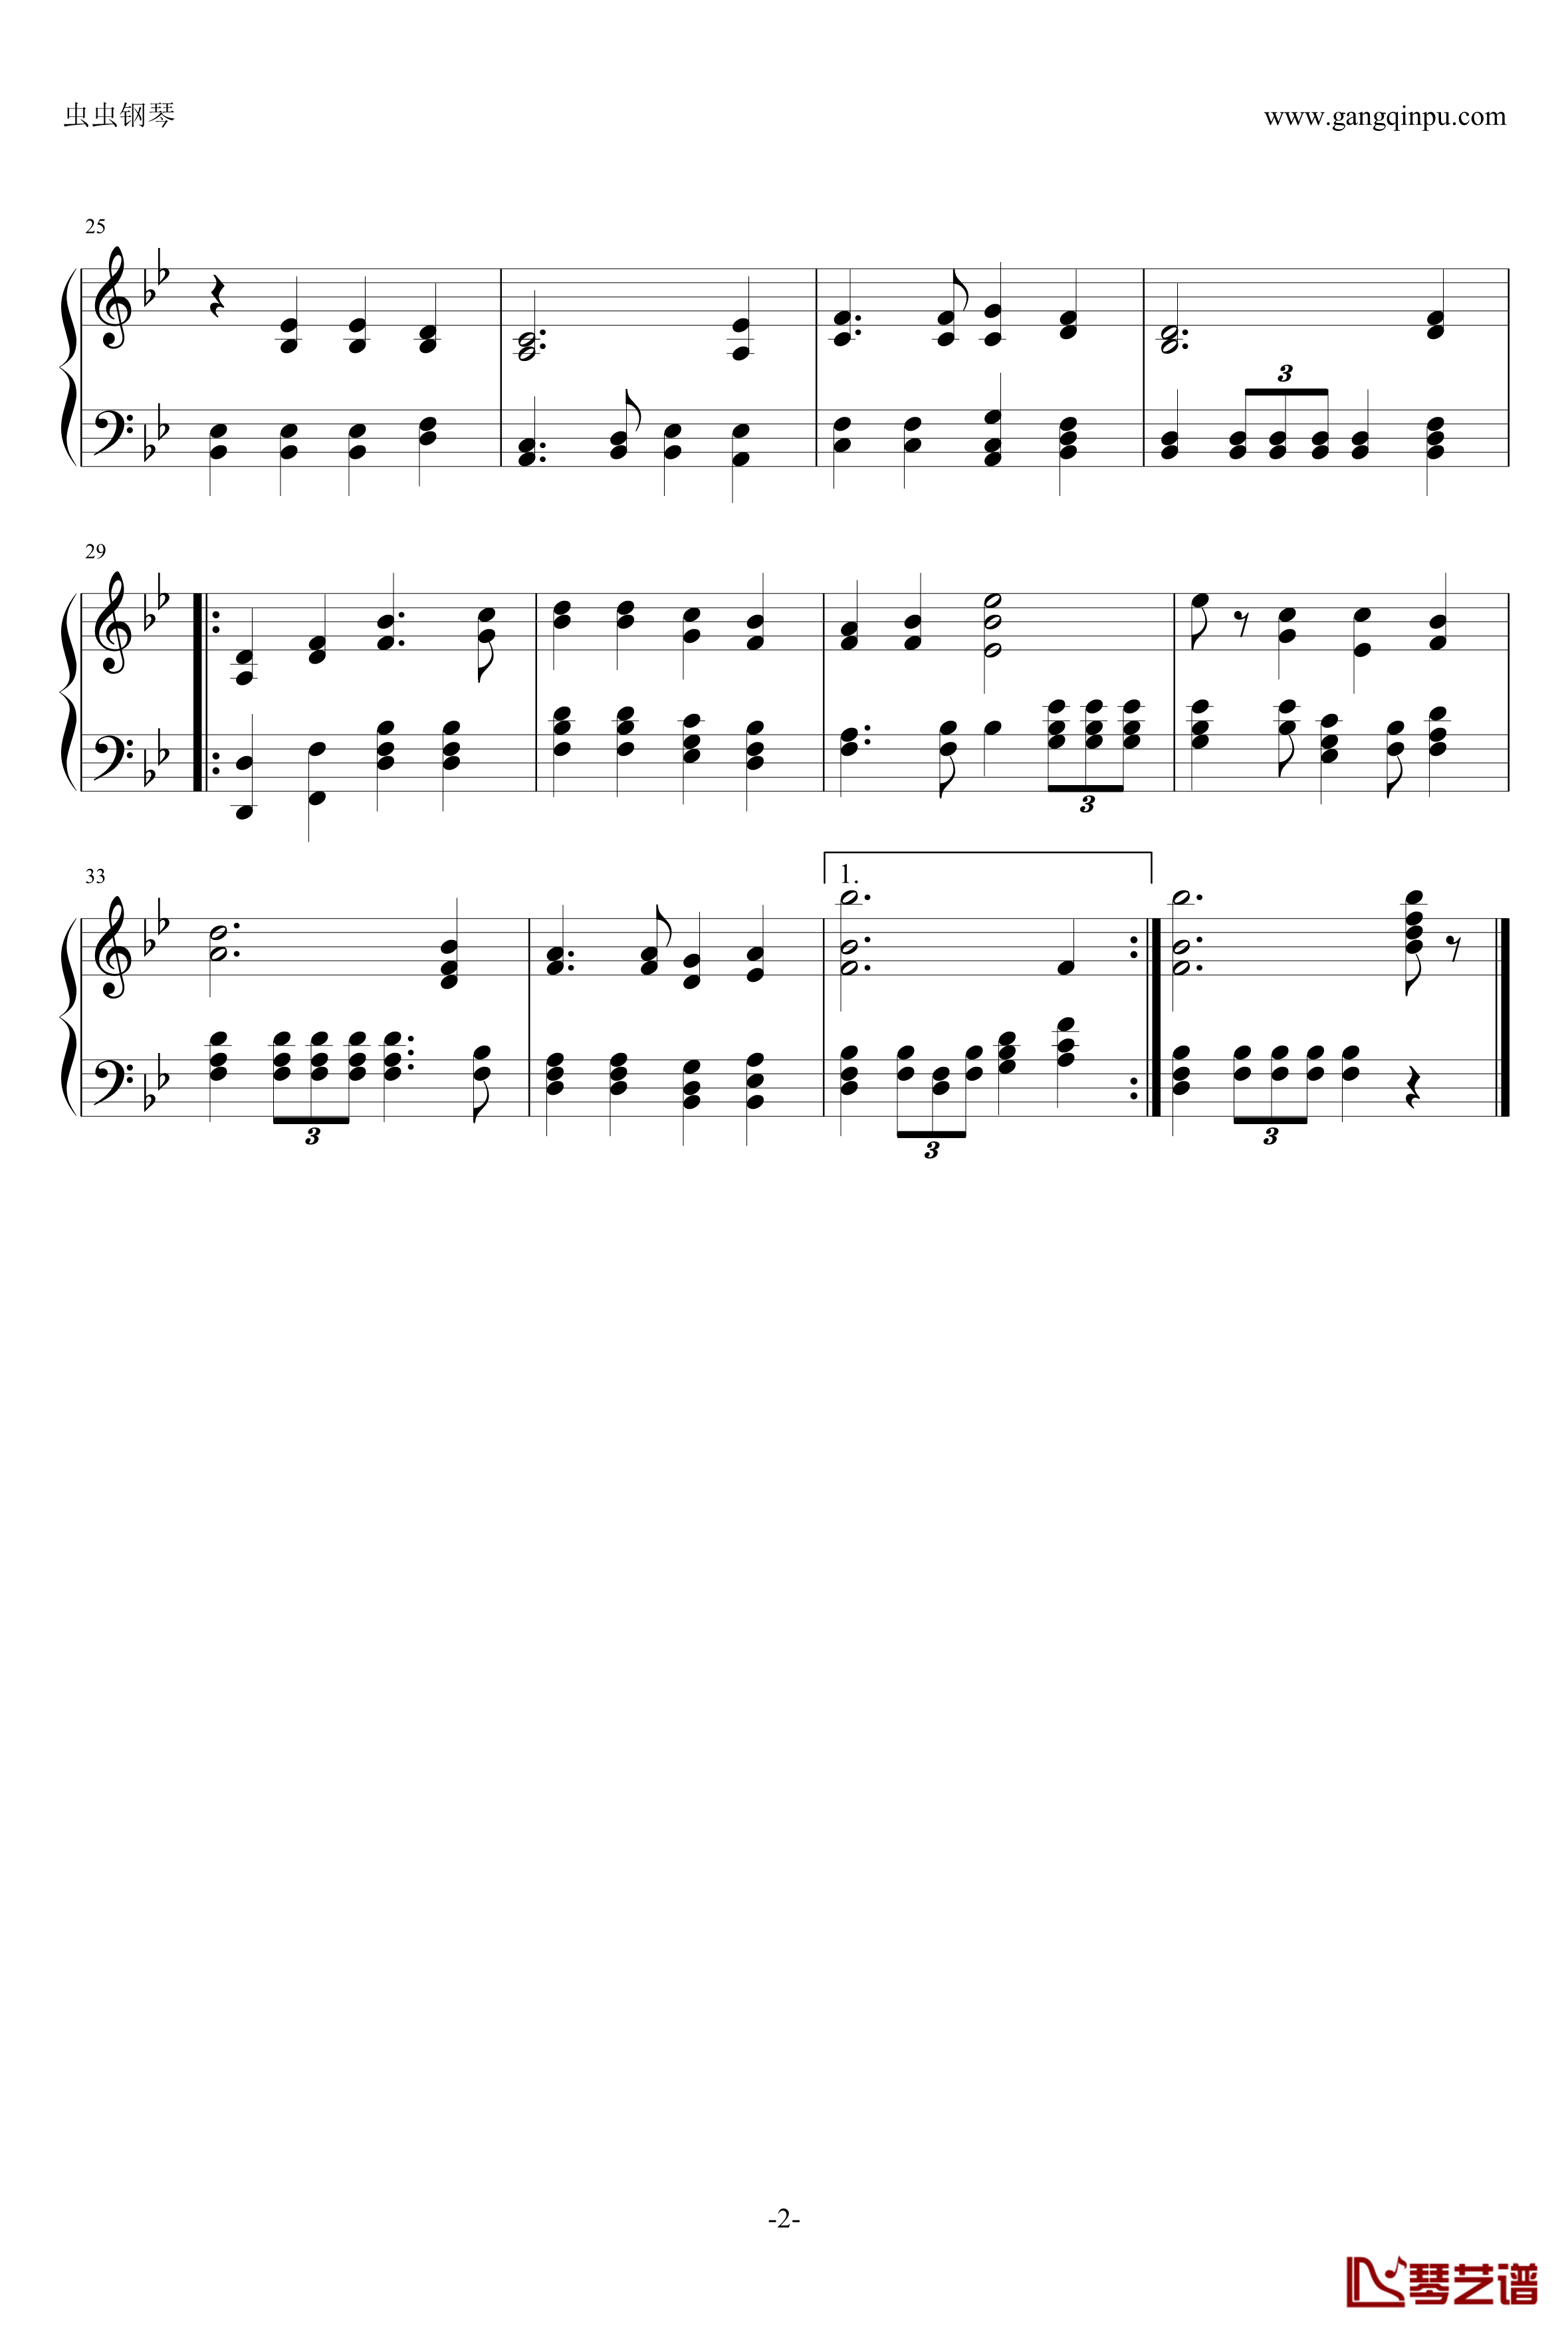 霍斯特钢琴谱-威瑟尔之歌-德国军歌2